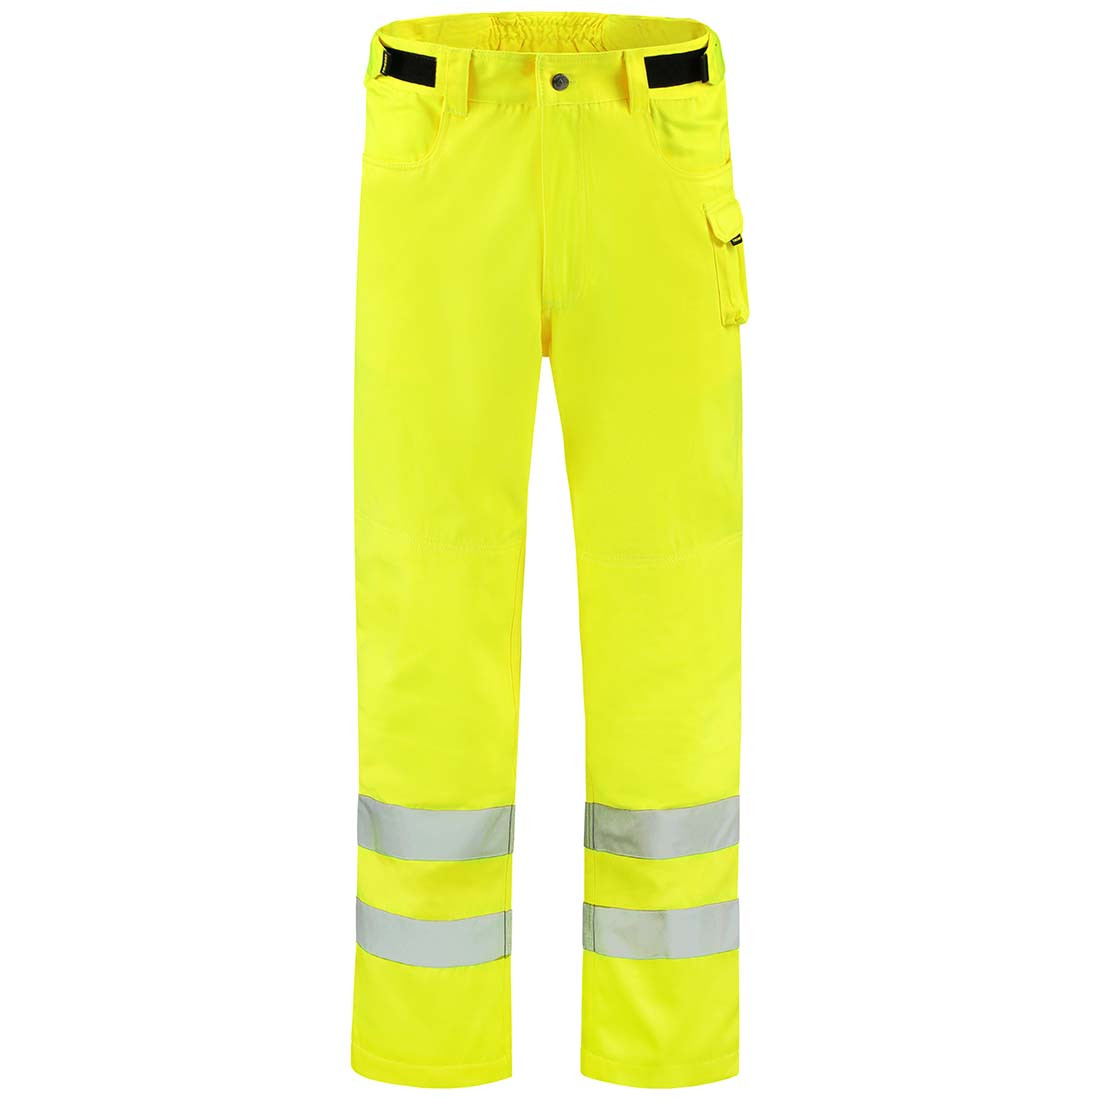 Pantalon de travail unisexe réfléchissant - Les vêtements de protection